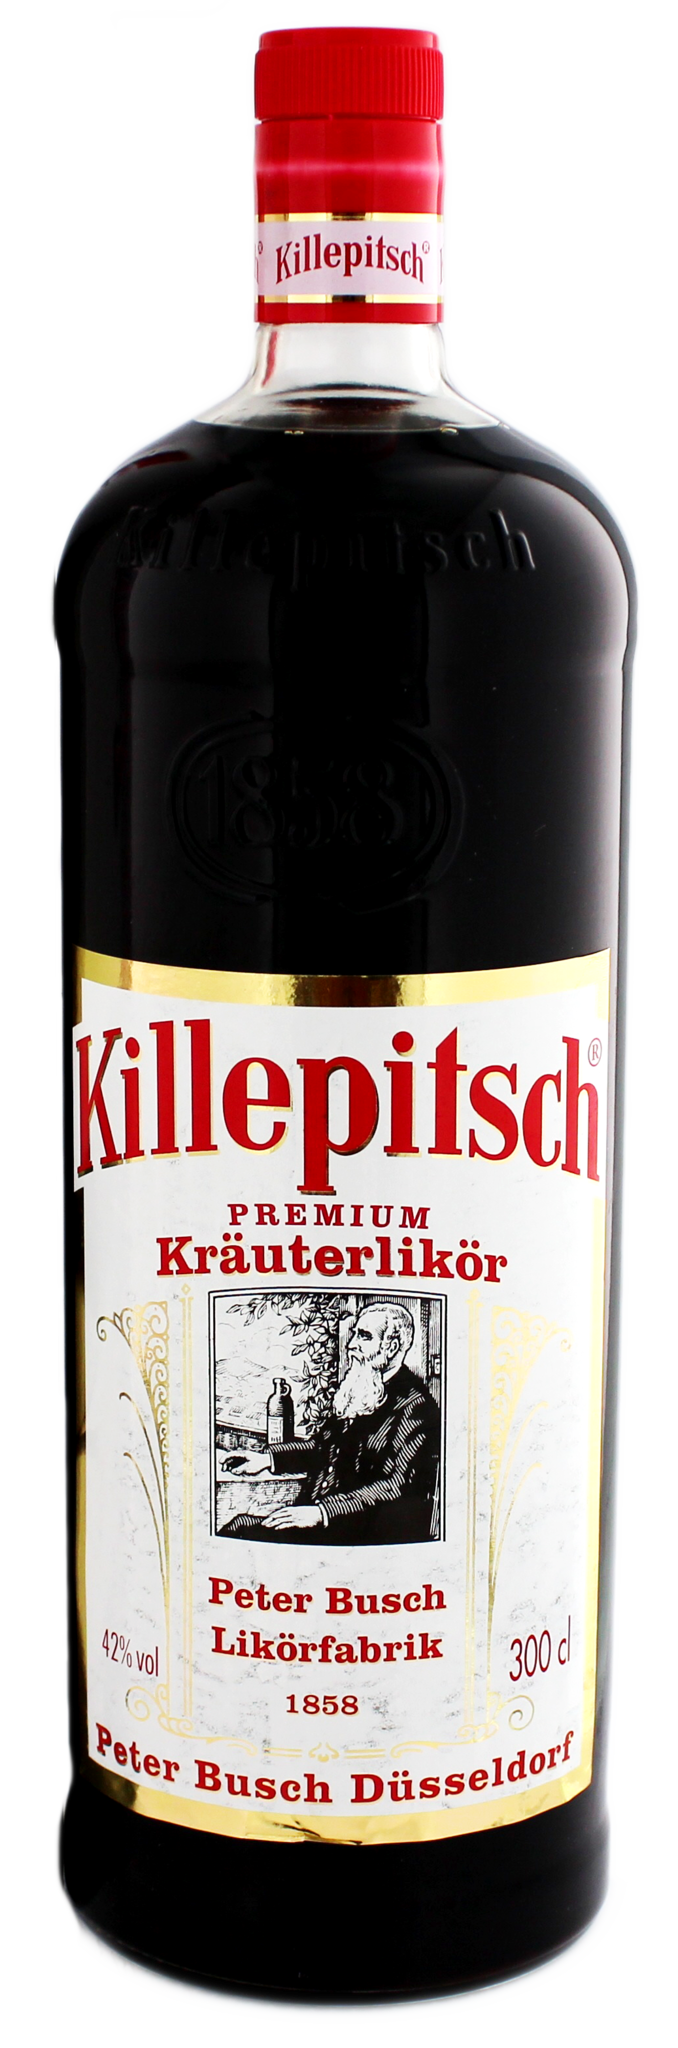 Killepitsch 3,00 ltr 42% - Fine Spirits World of Whiskysite.nl